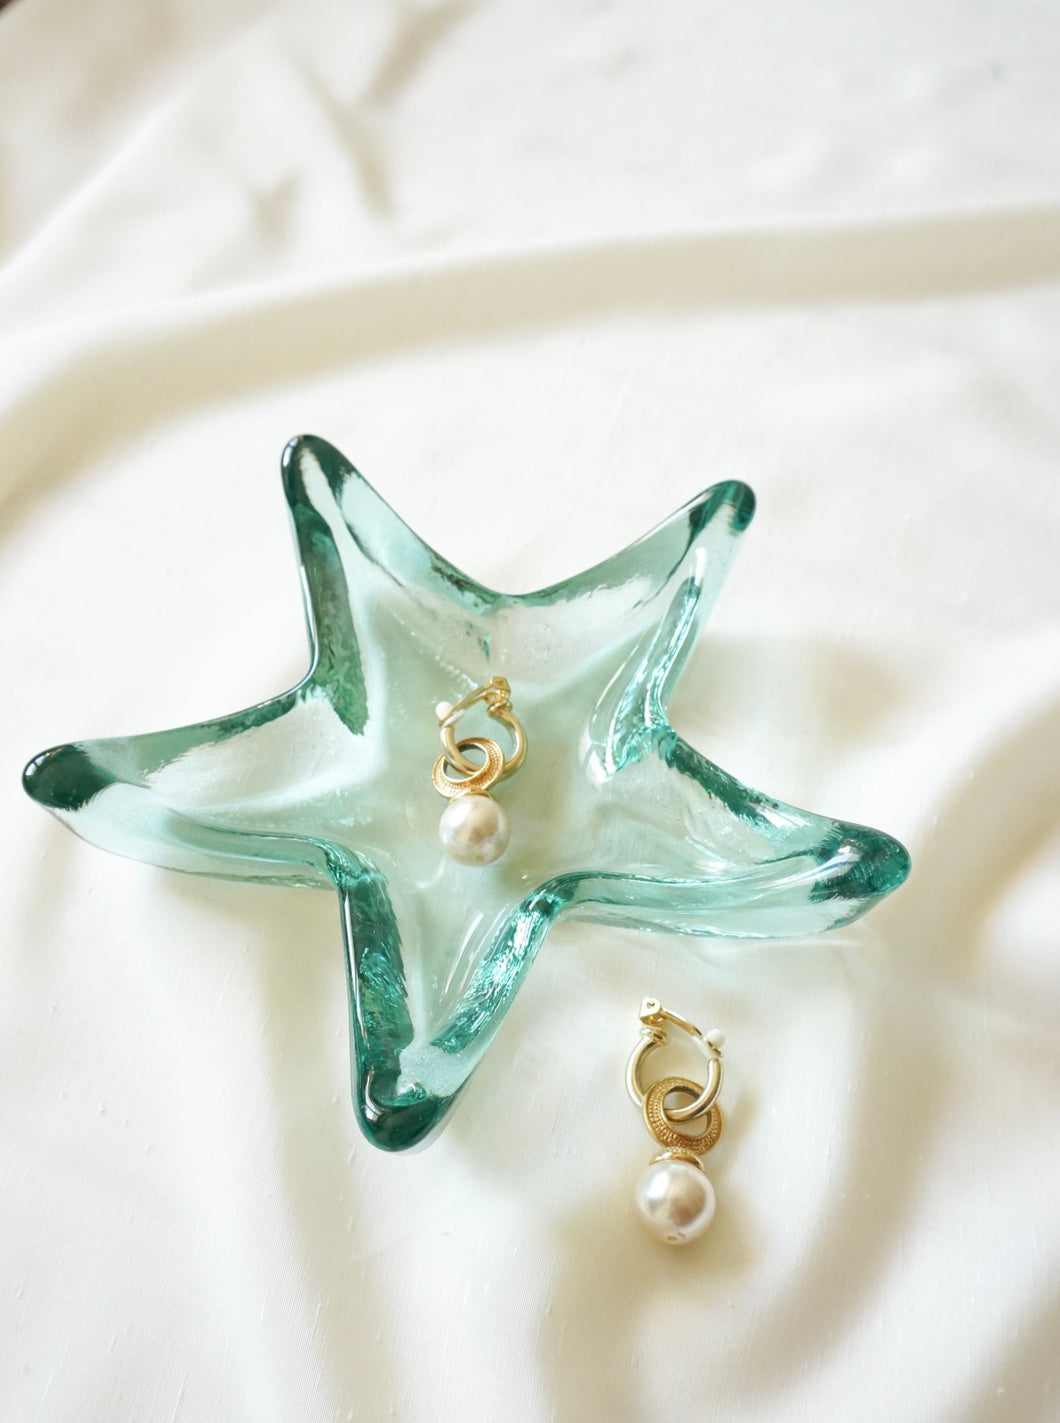 Starfish jewelry dish